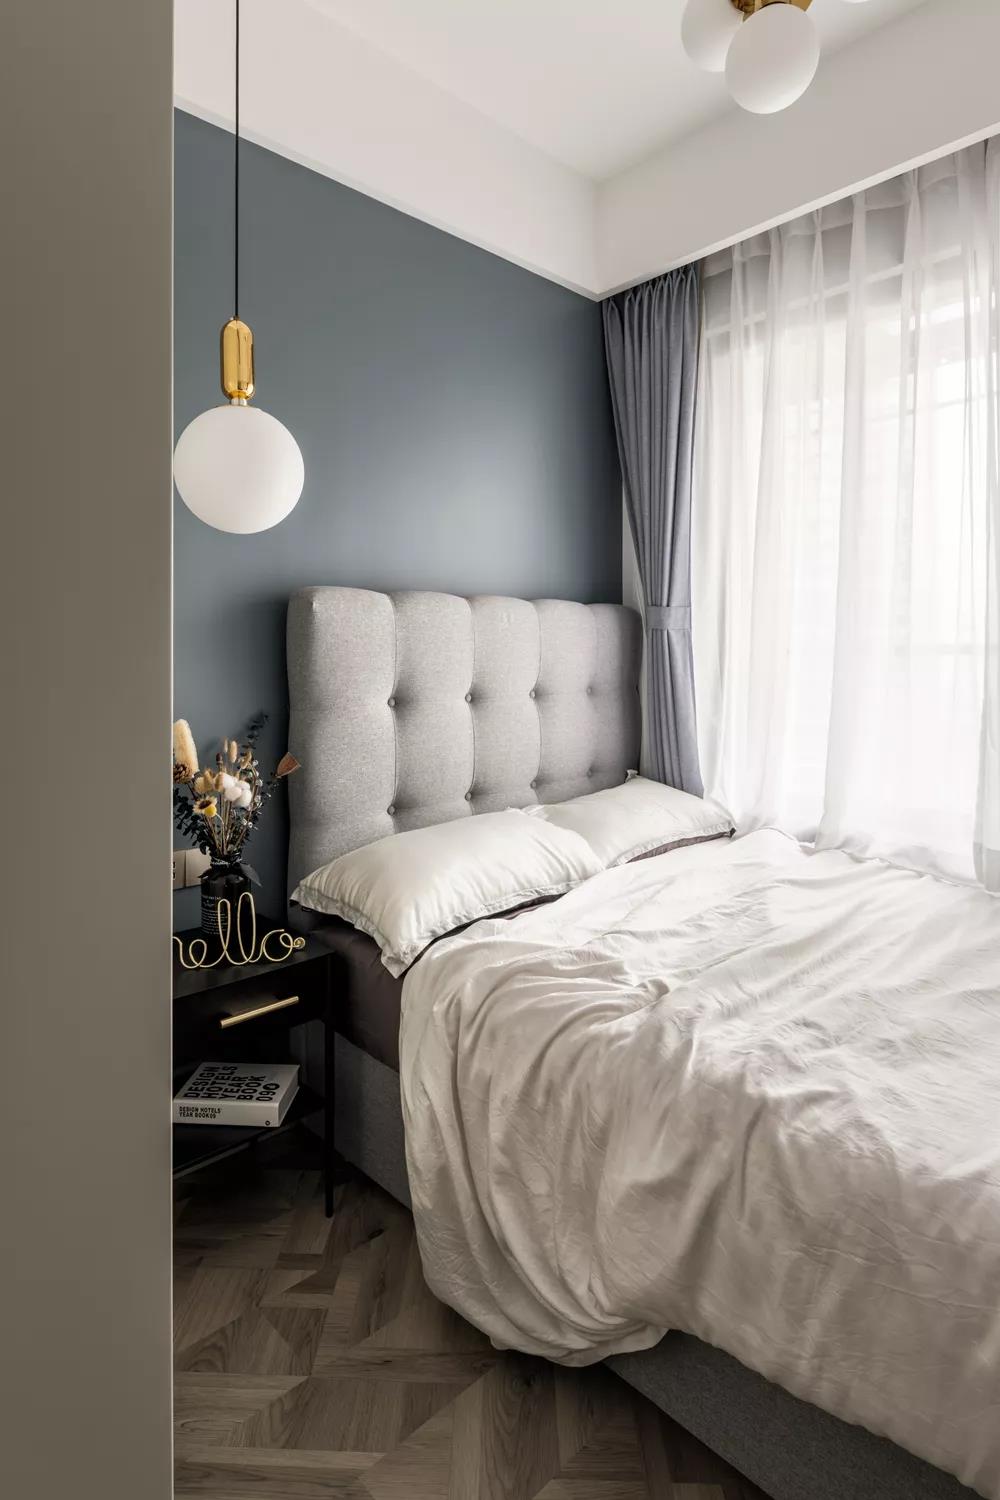 次卧是男孩房，雾霾蓝的墙漆显得宁静优雅，再加上浅灰色的床和窗帘，白色的床品、纱帘，营造出一种简约、轻松的感觉。